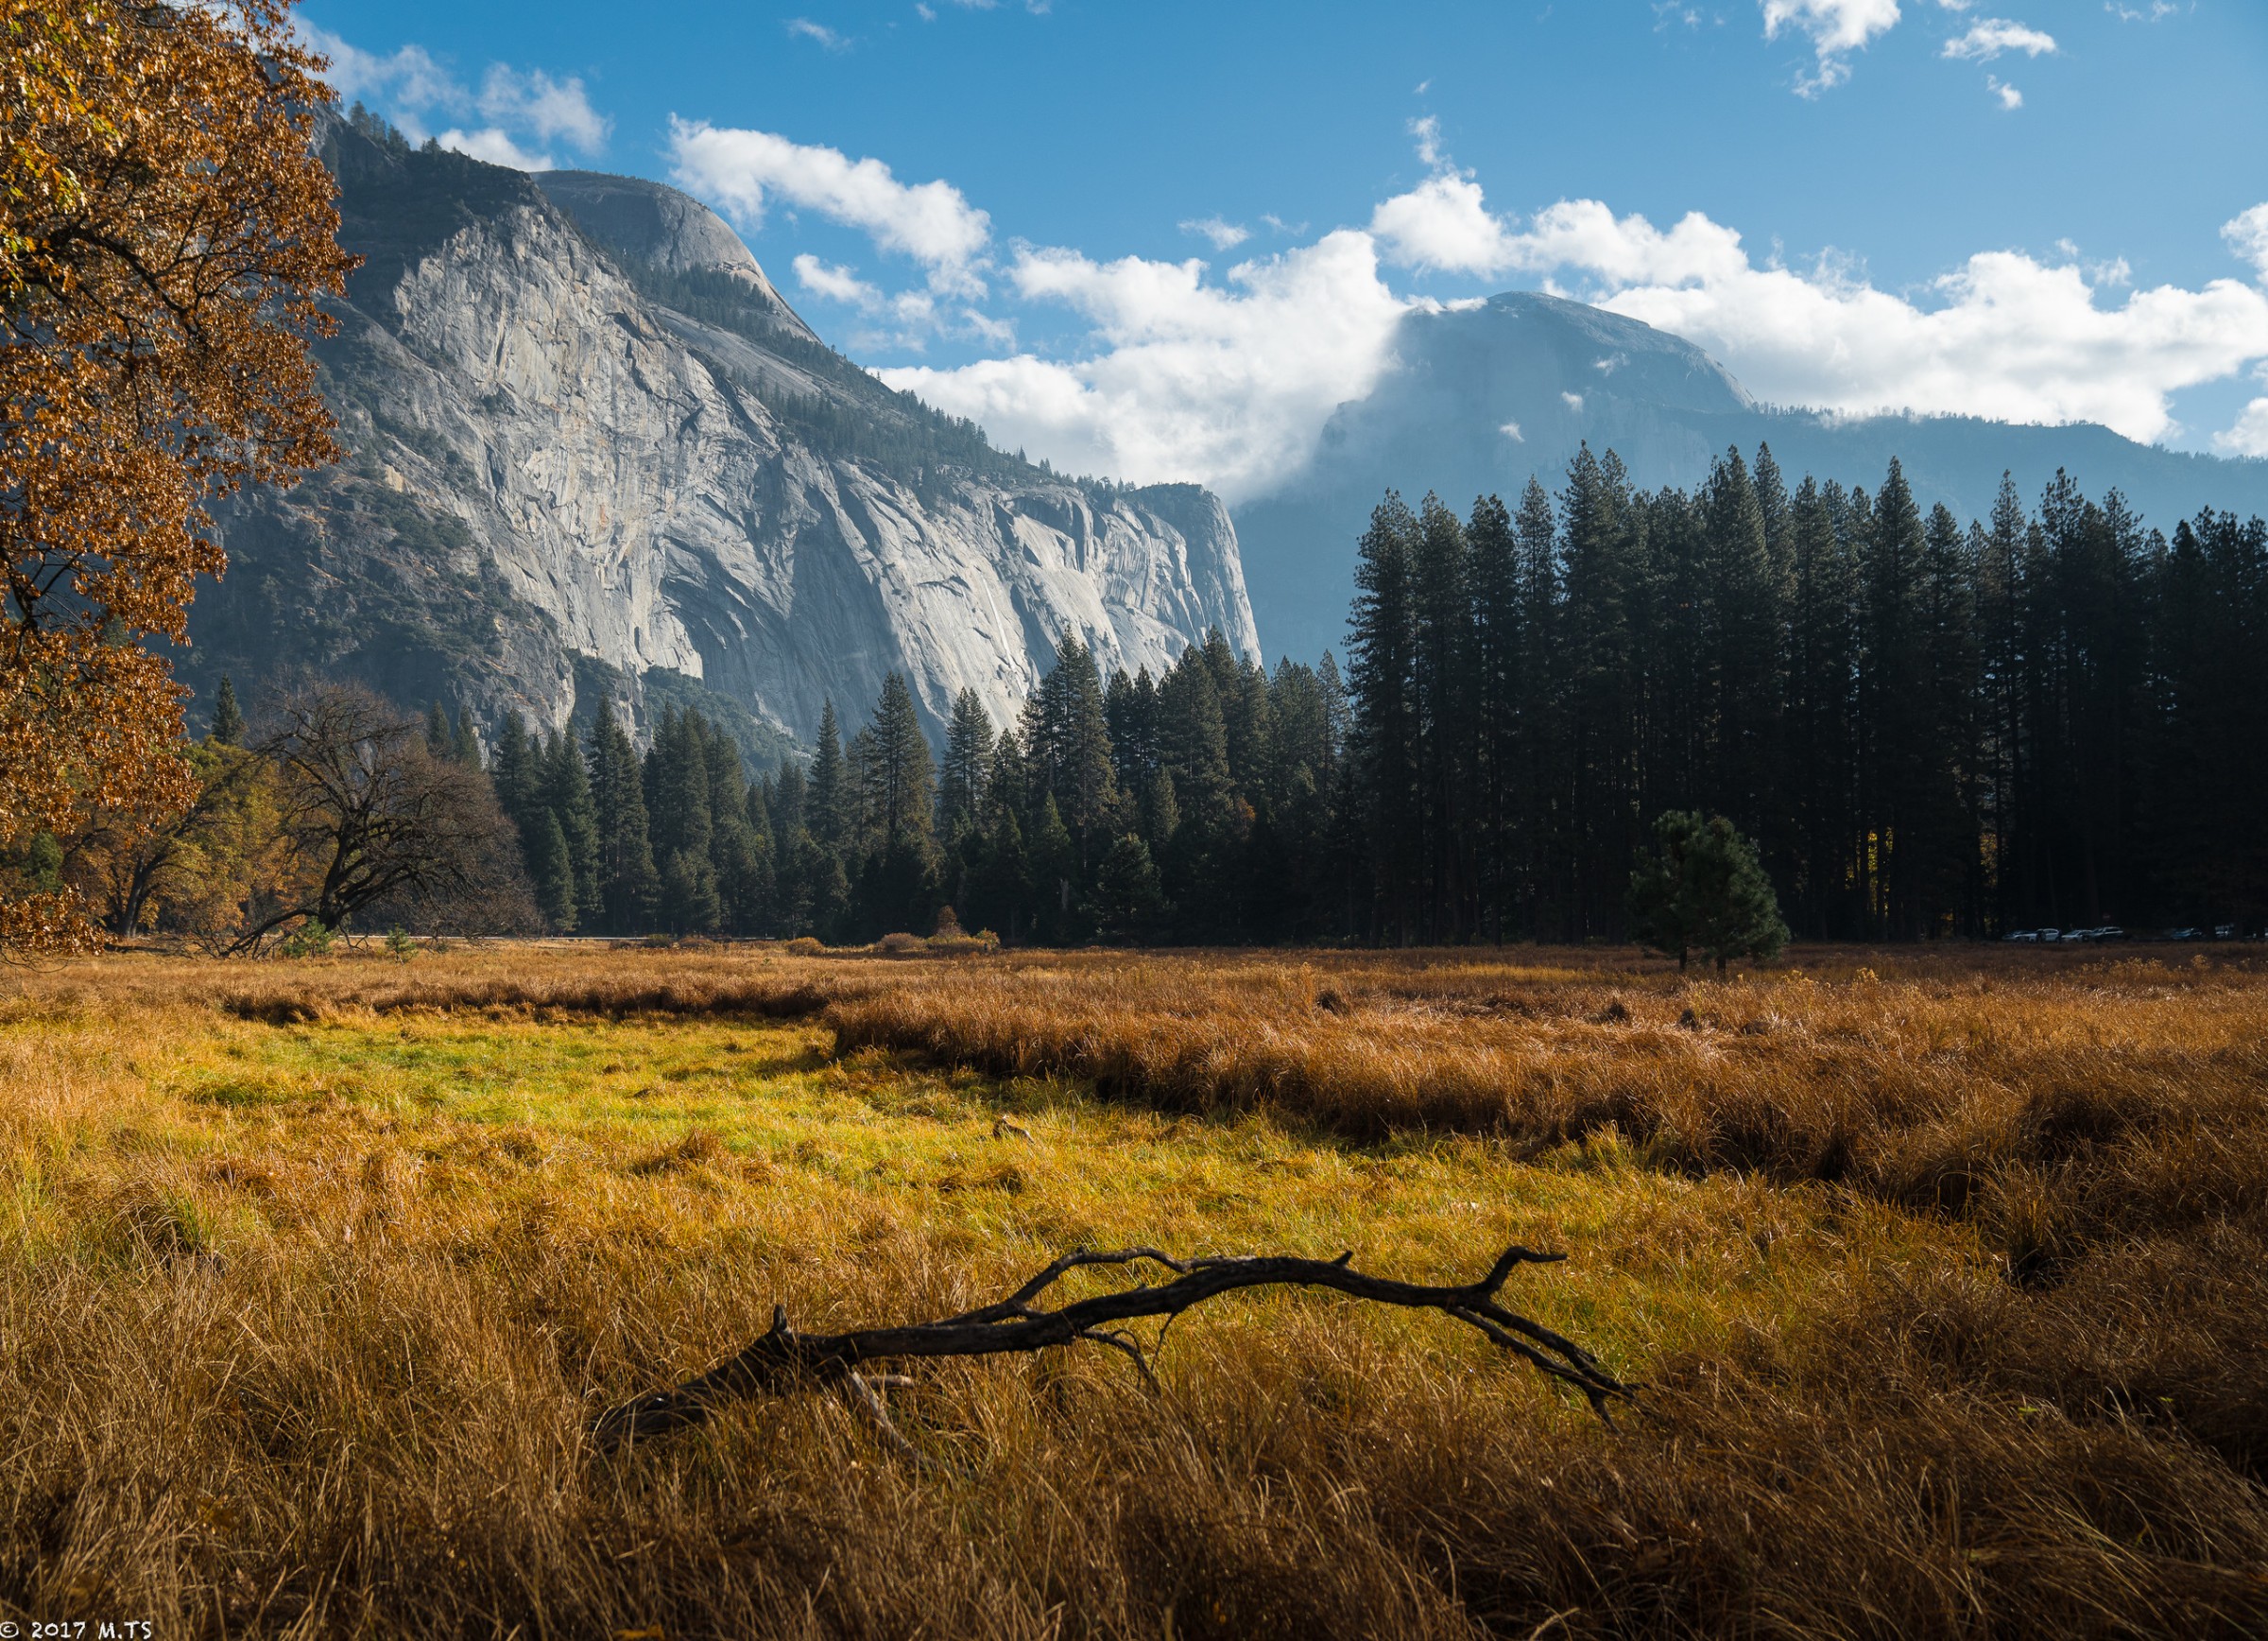 Yosemite in November